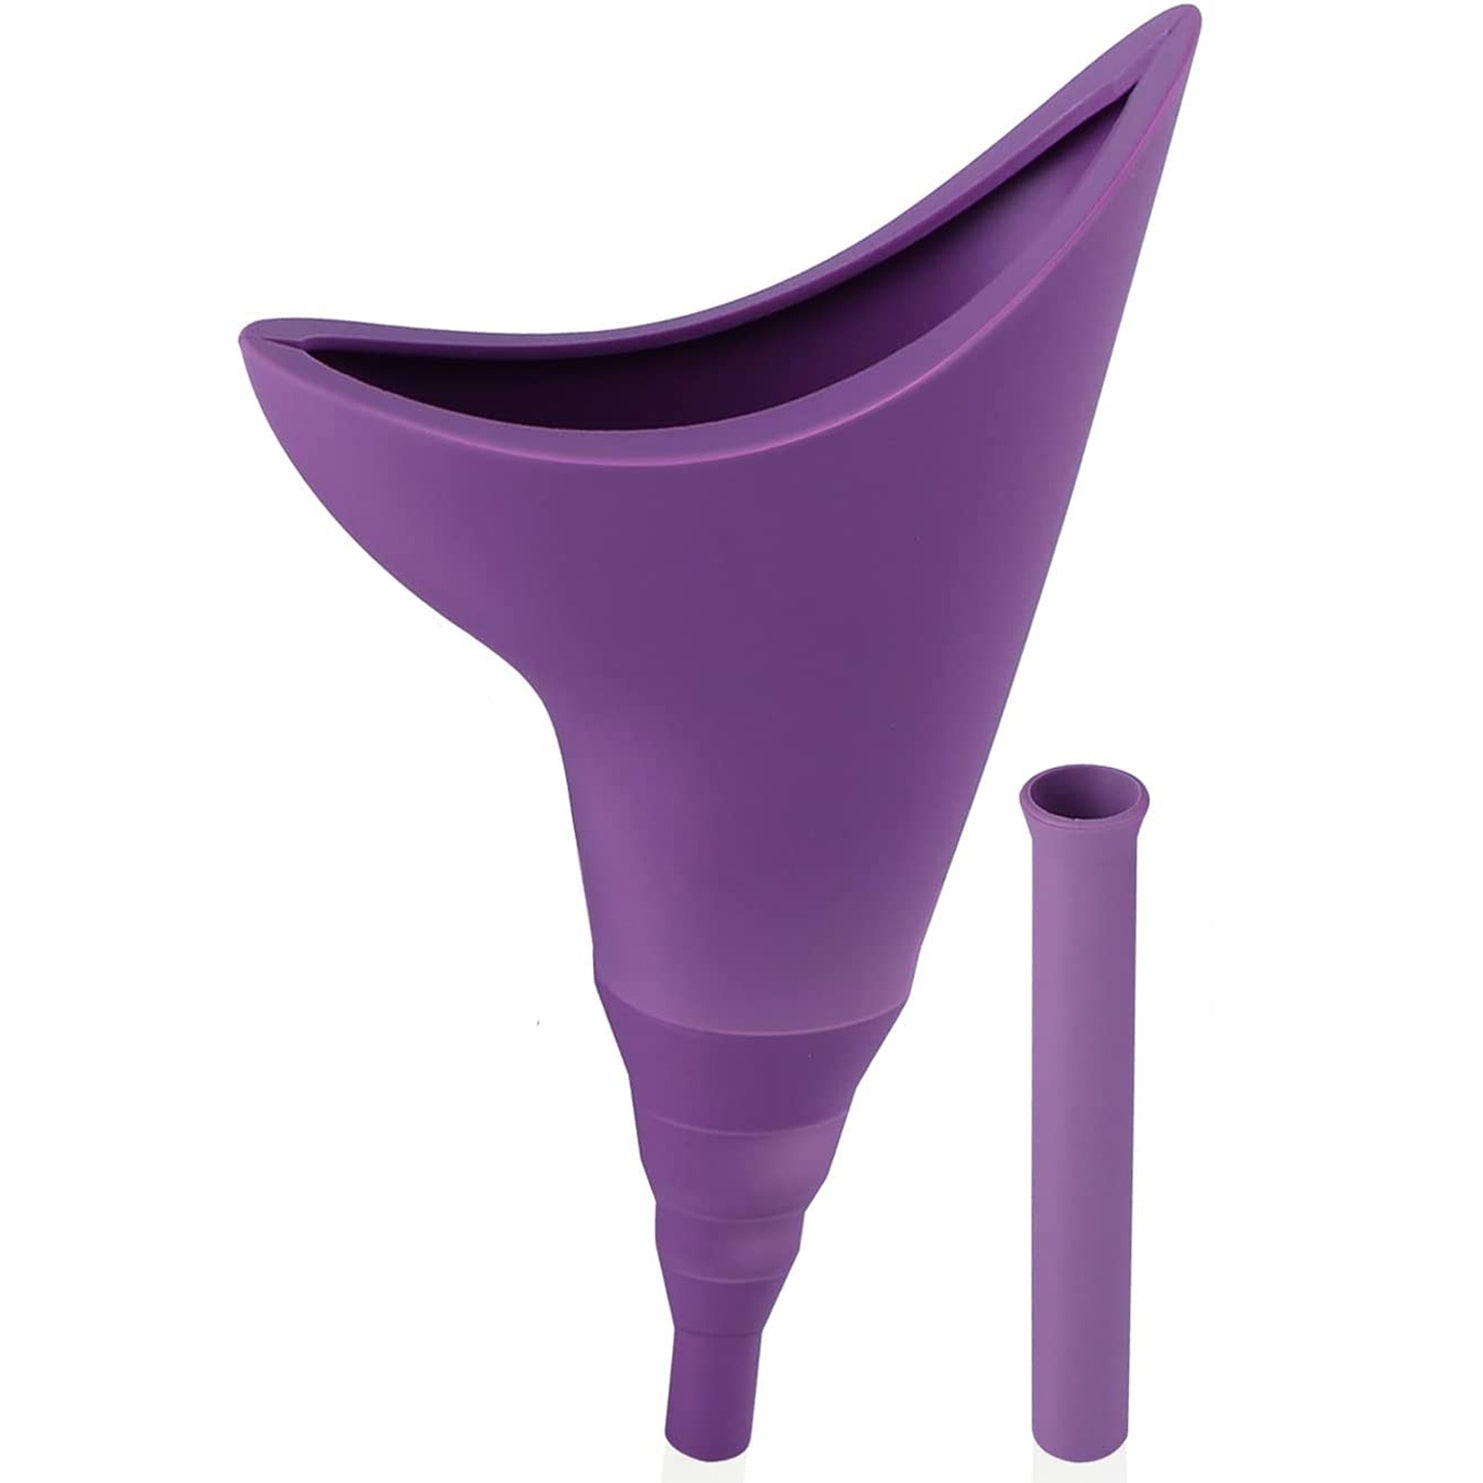 Dispozitiv pentru Urinat din Silicon cu Extensie Detasabila, Purple - Linovit Store